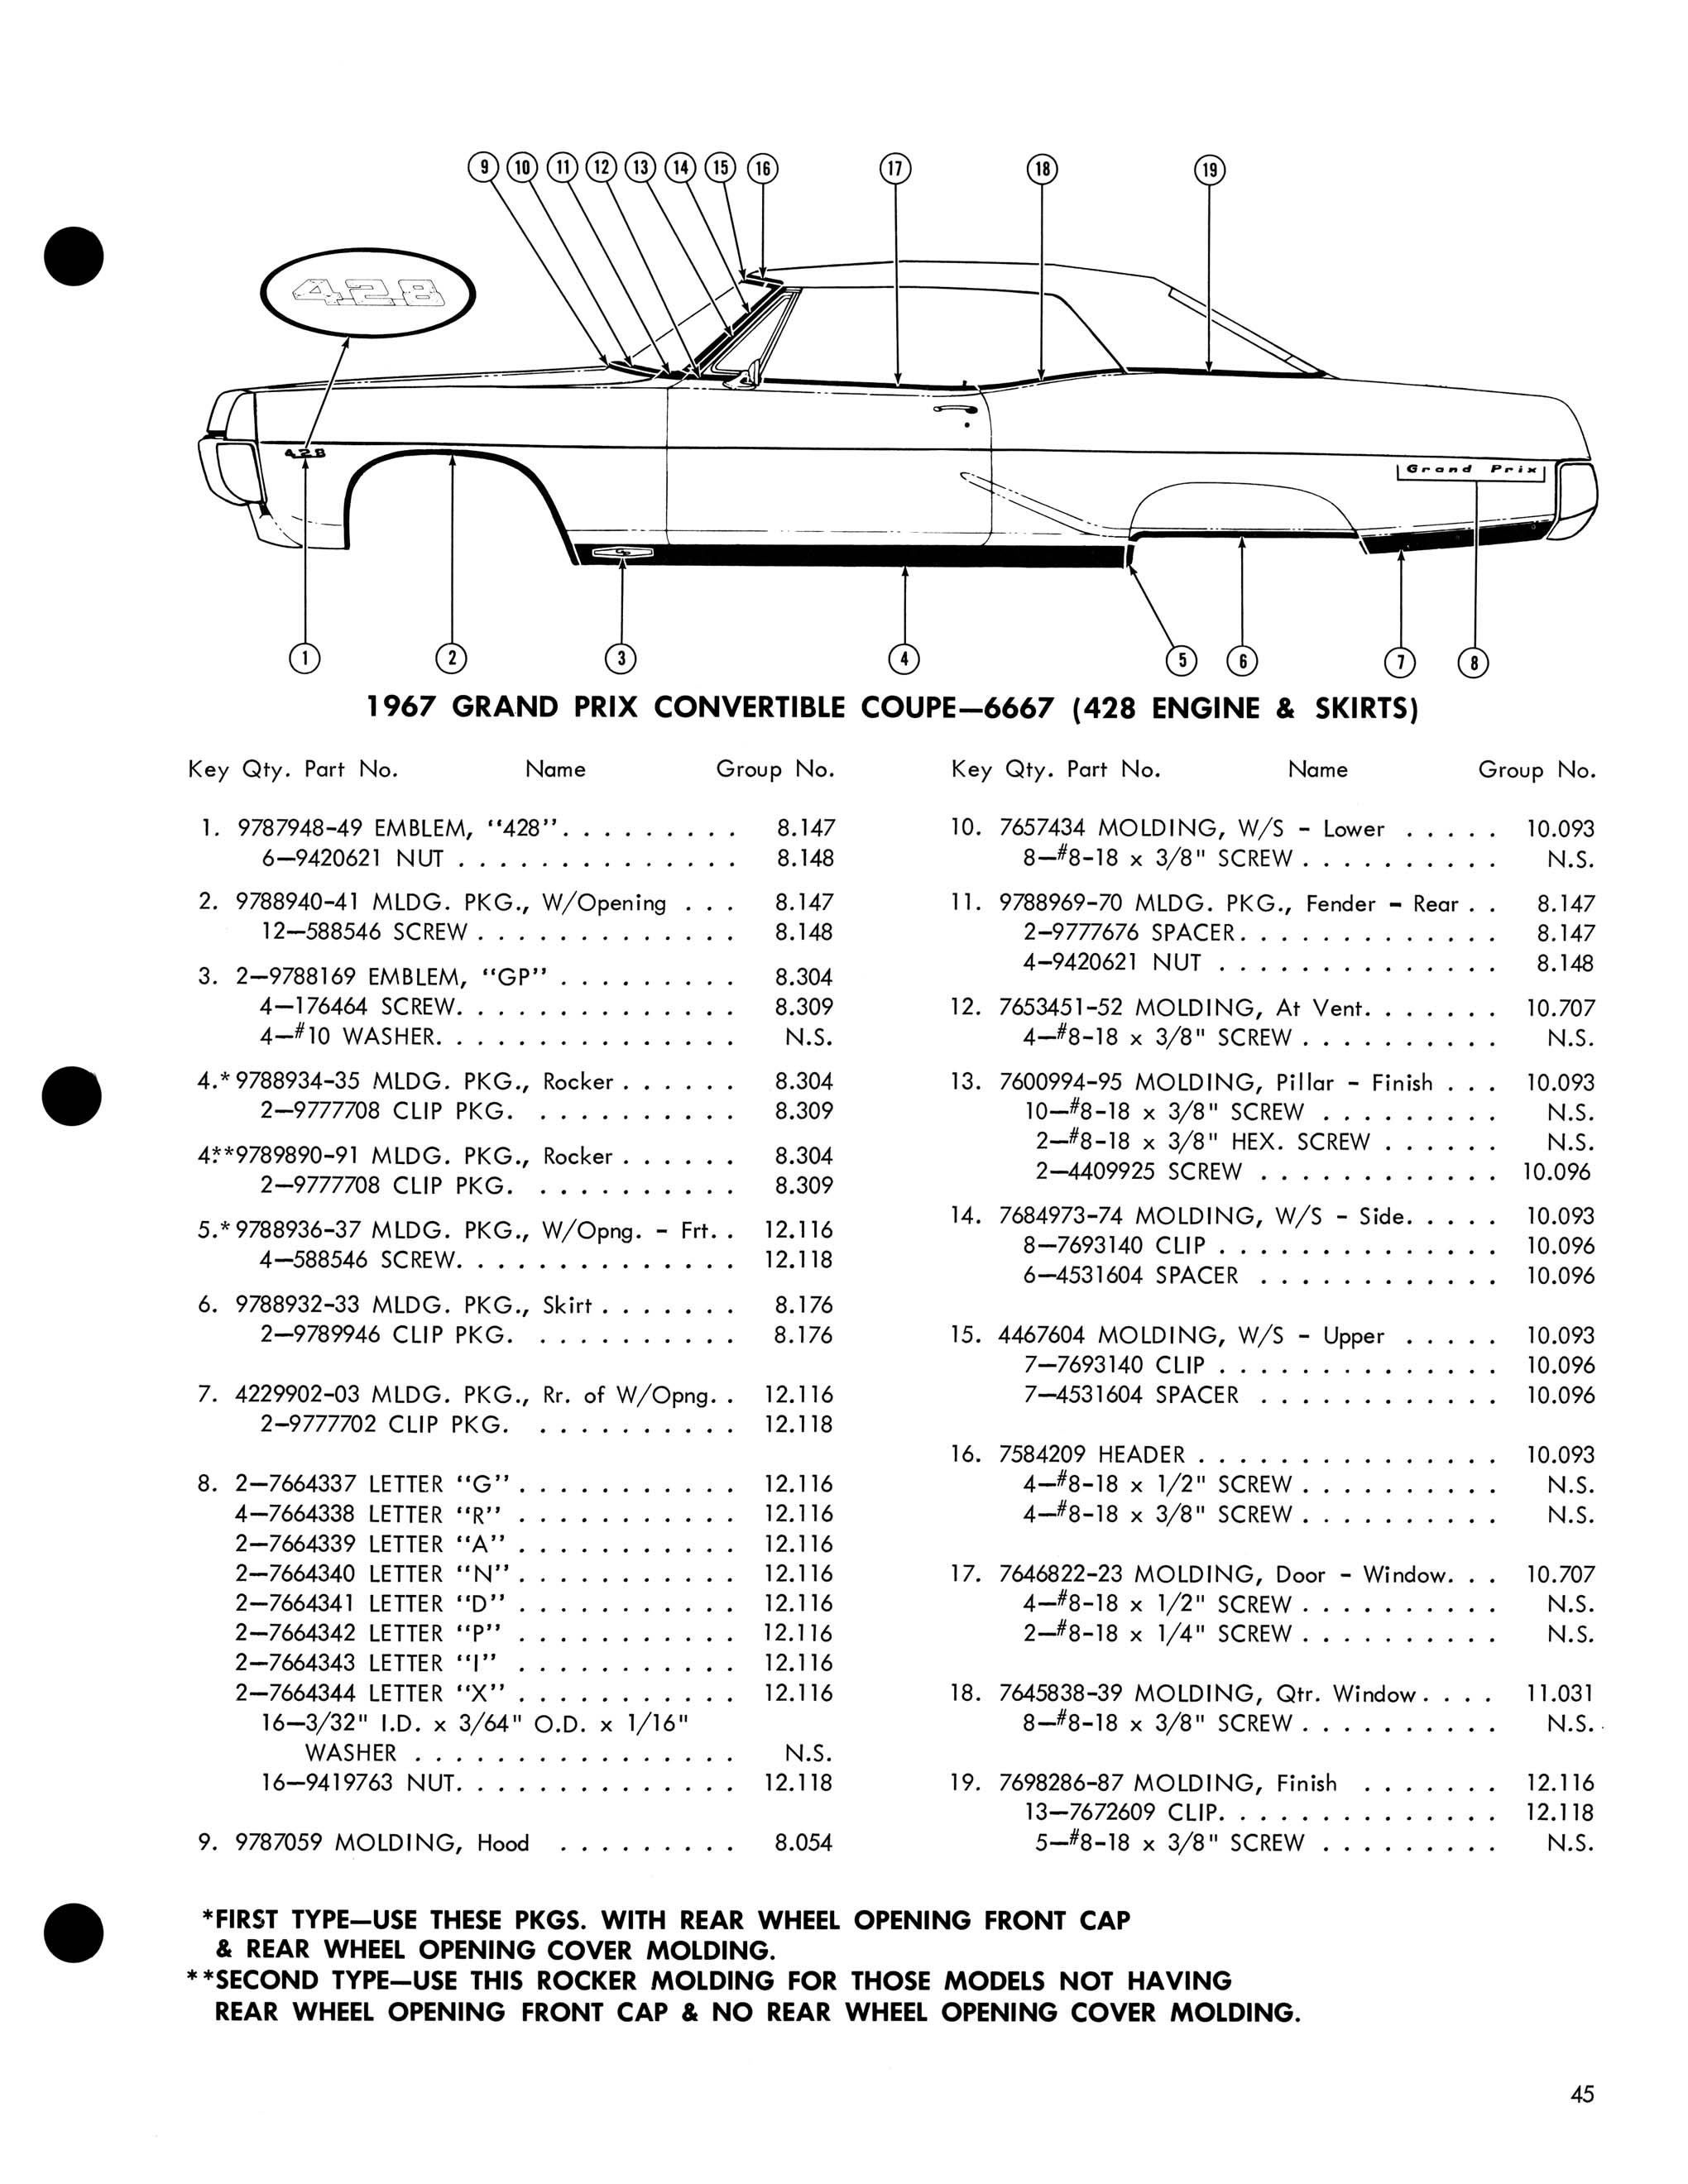 1967 Pontiac Molding and Clip Catalog-45